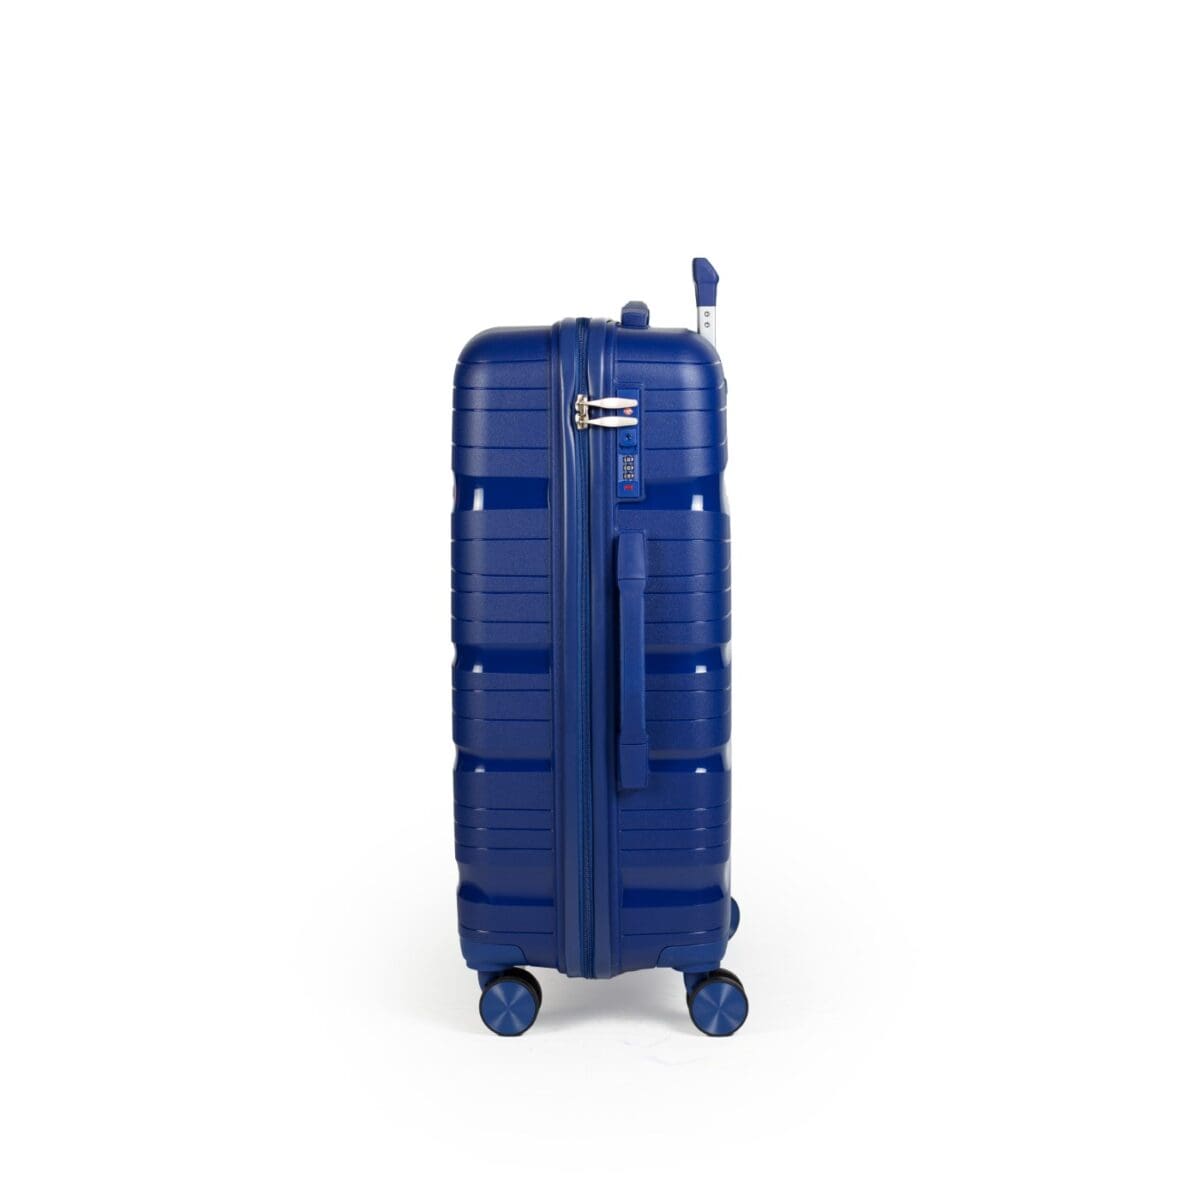 Αριστερή πλευρά βαλίτσας με χερούλι και συνδυασμό tsa σε μπλε χρώμα